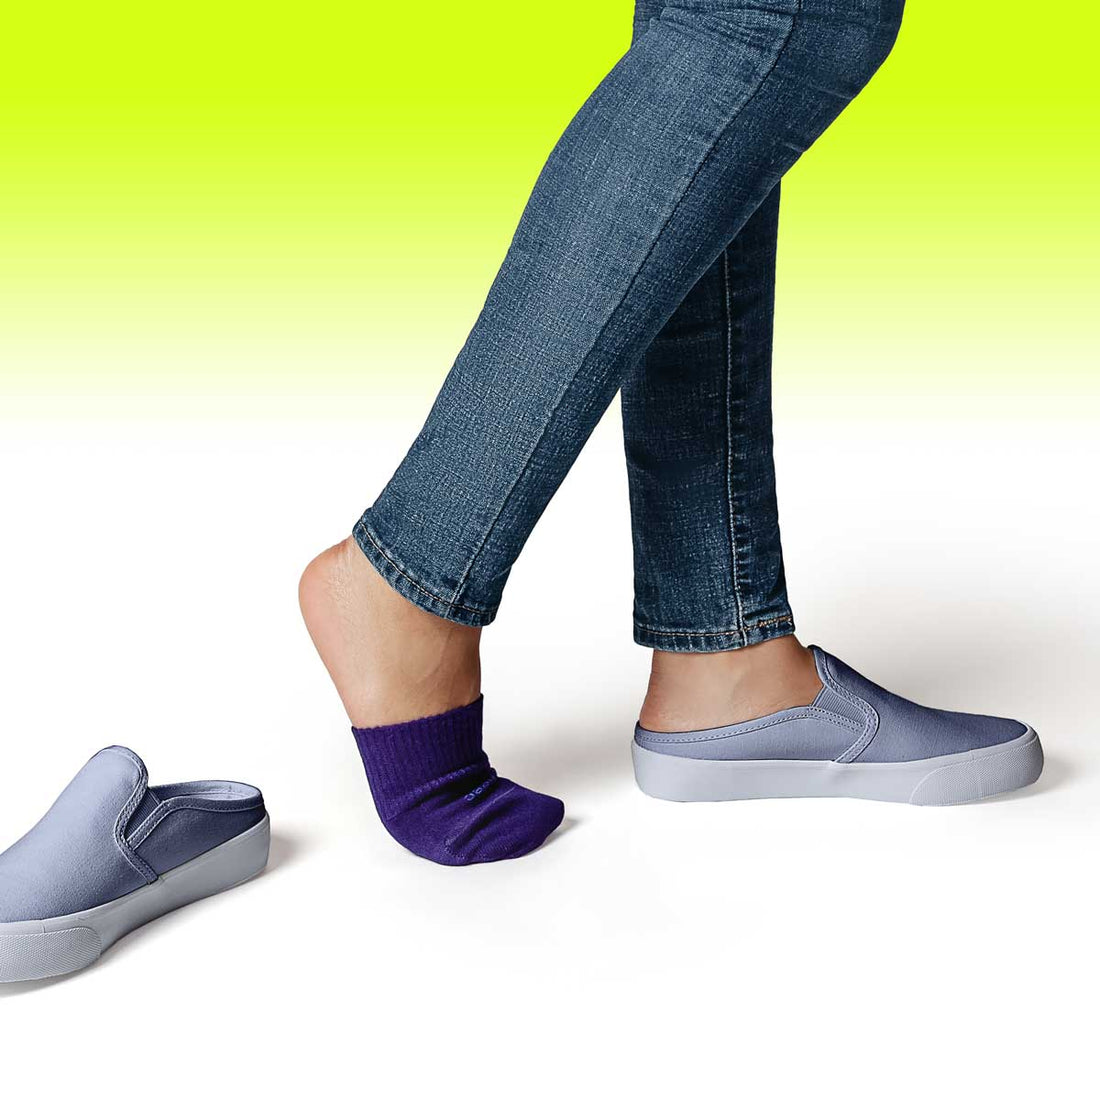 Super Soft Modal Toe Cover Half Socks for Women | INDIGO NAVY